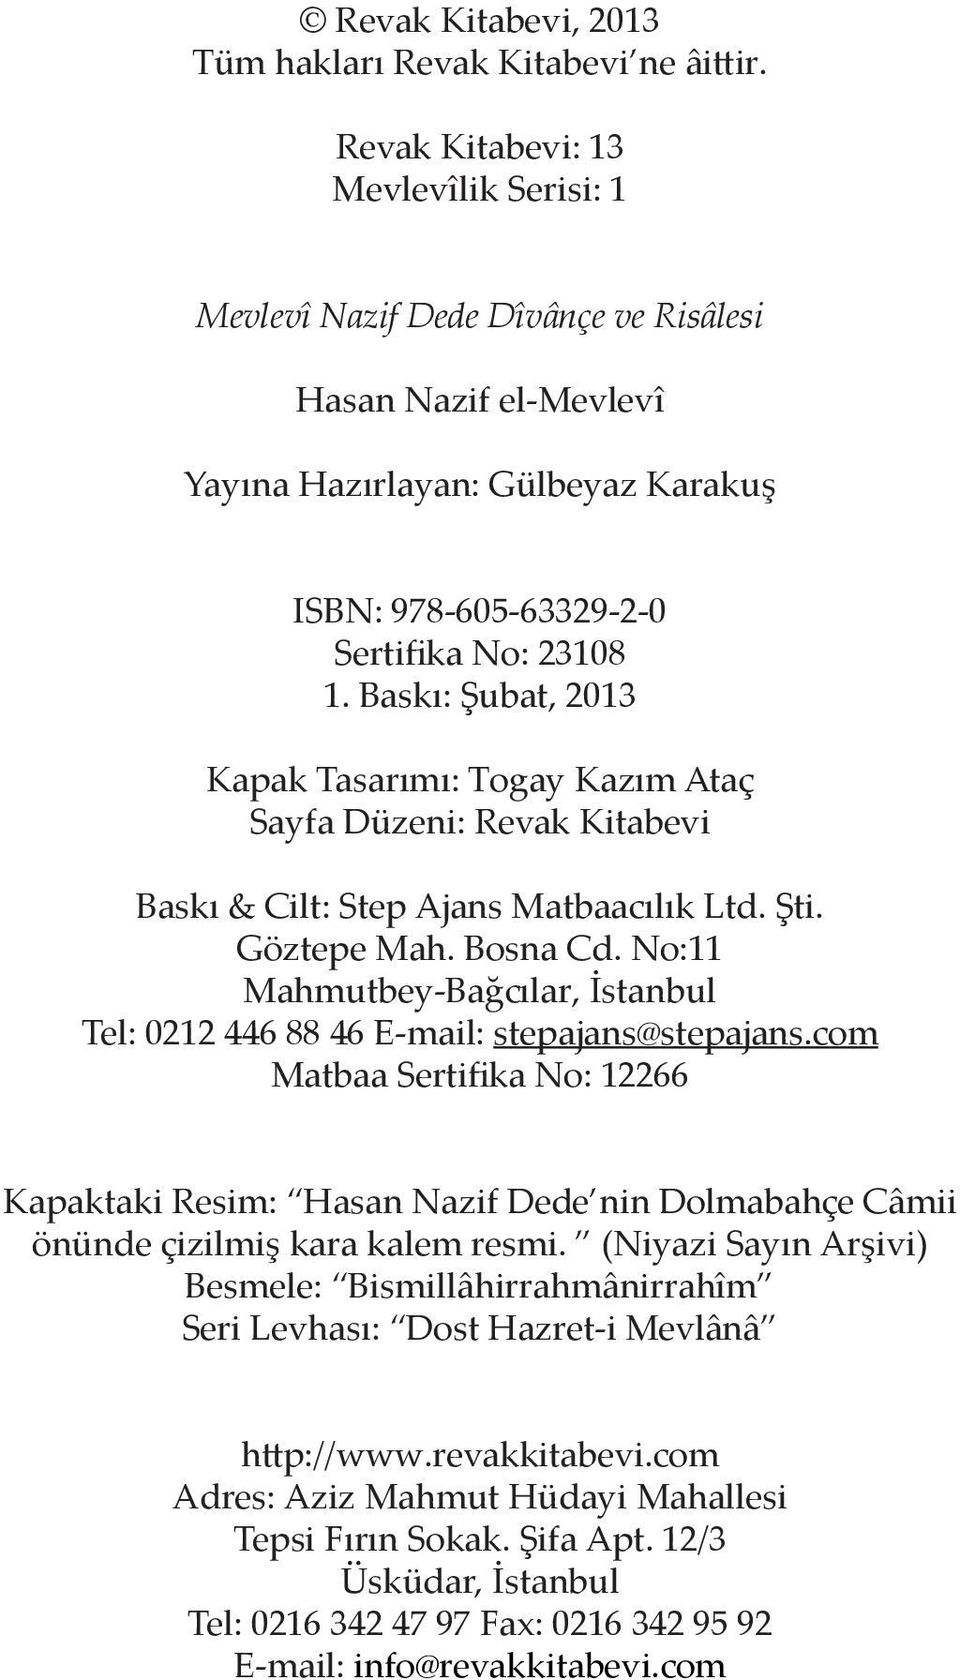 Baskı: Şubat, 2013 Kapak Tasarımı: Togay Kazım Ataç Sayfa Düzeni: Revak Kitabevi Baskı & Cilt: Step Ajans Matbaacılık Ltd. Şti. Göztepe Mah. Bosna Cd.